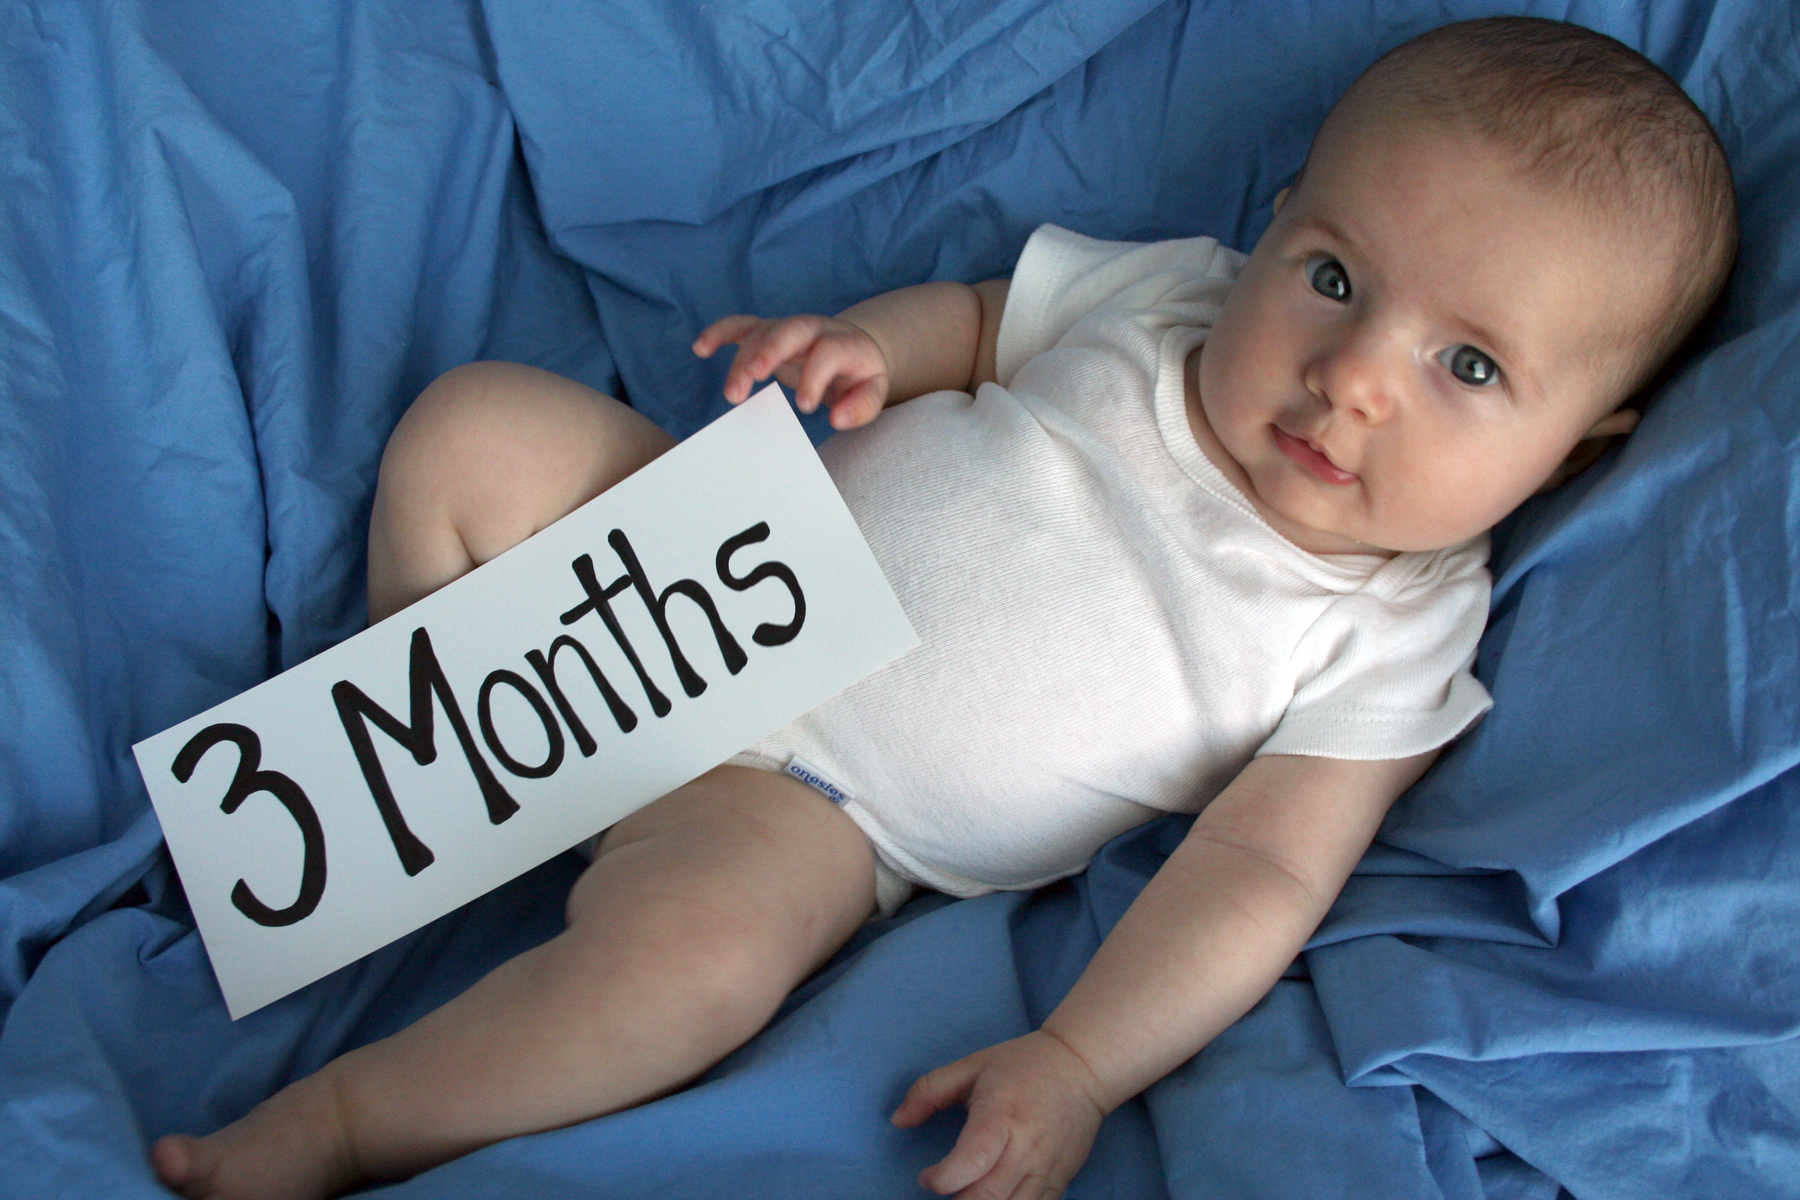 Développement de l'enfant : que fait un bébé de trois mois